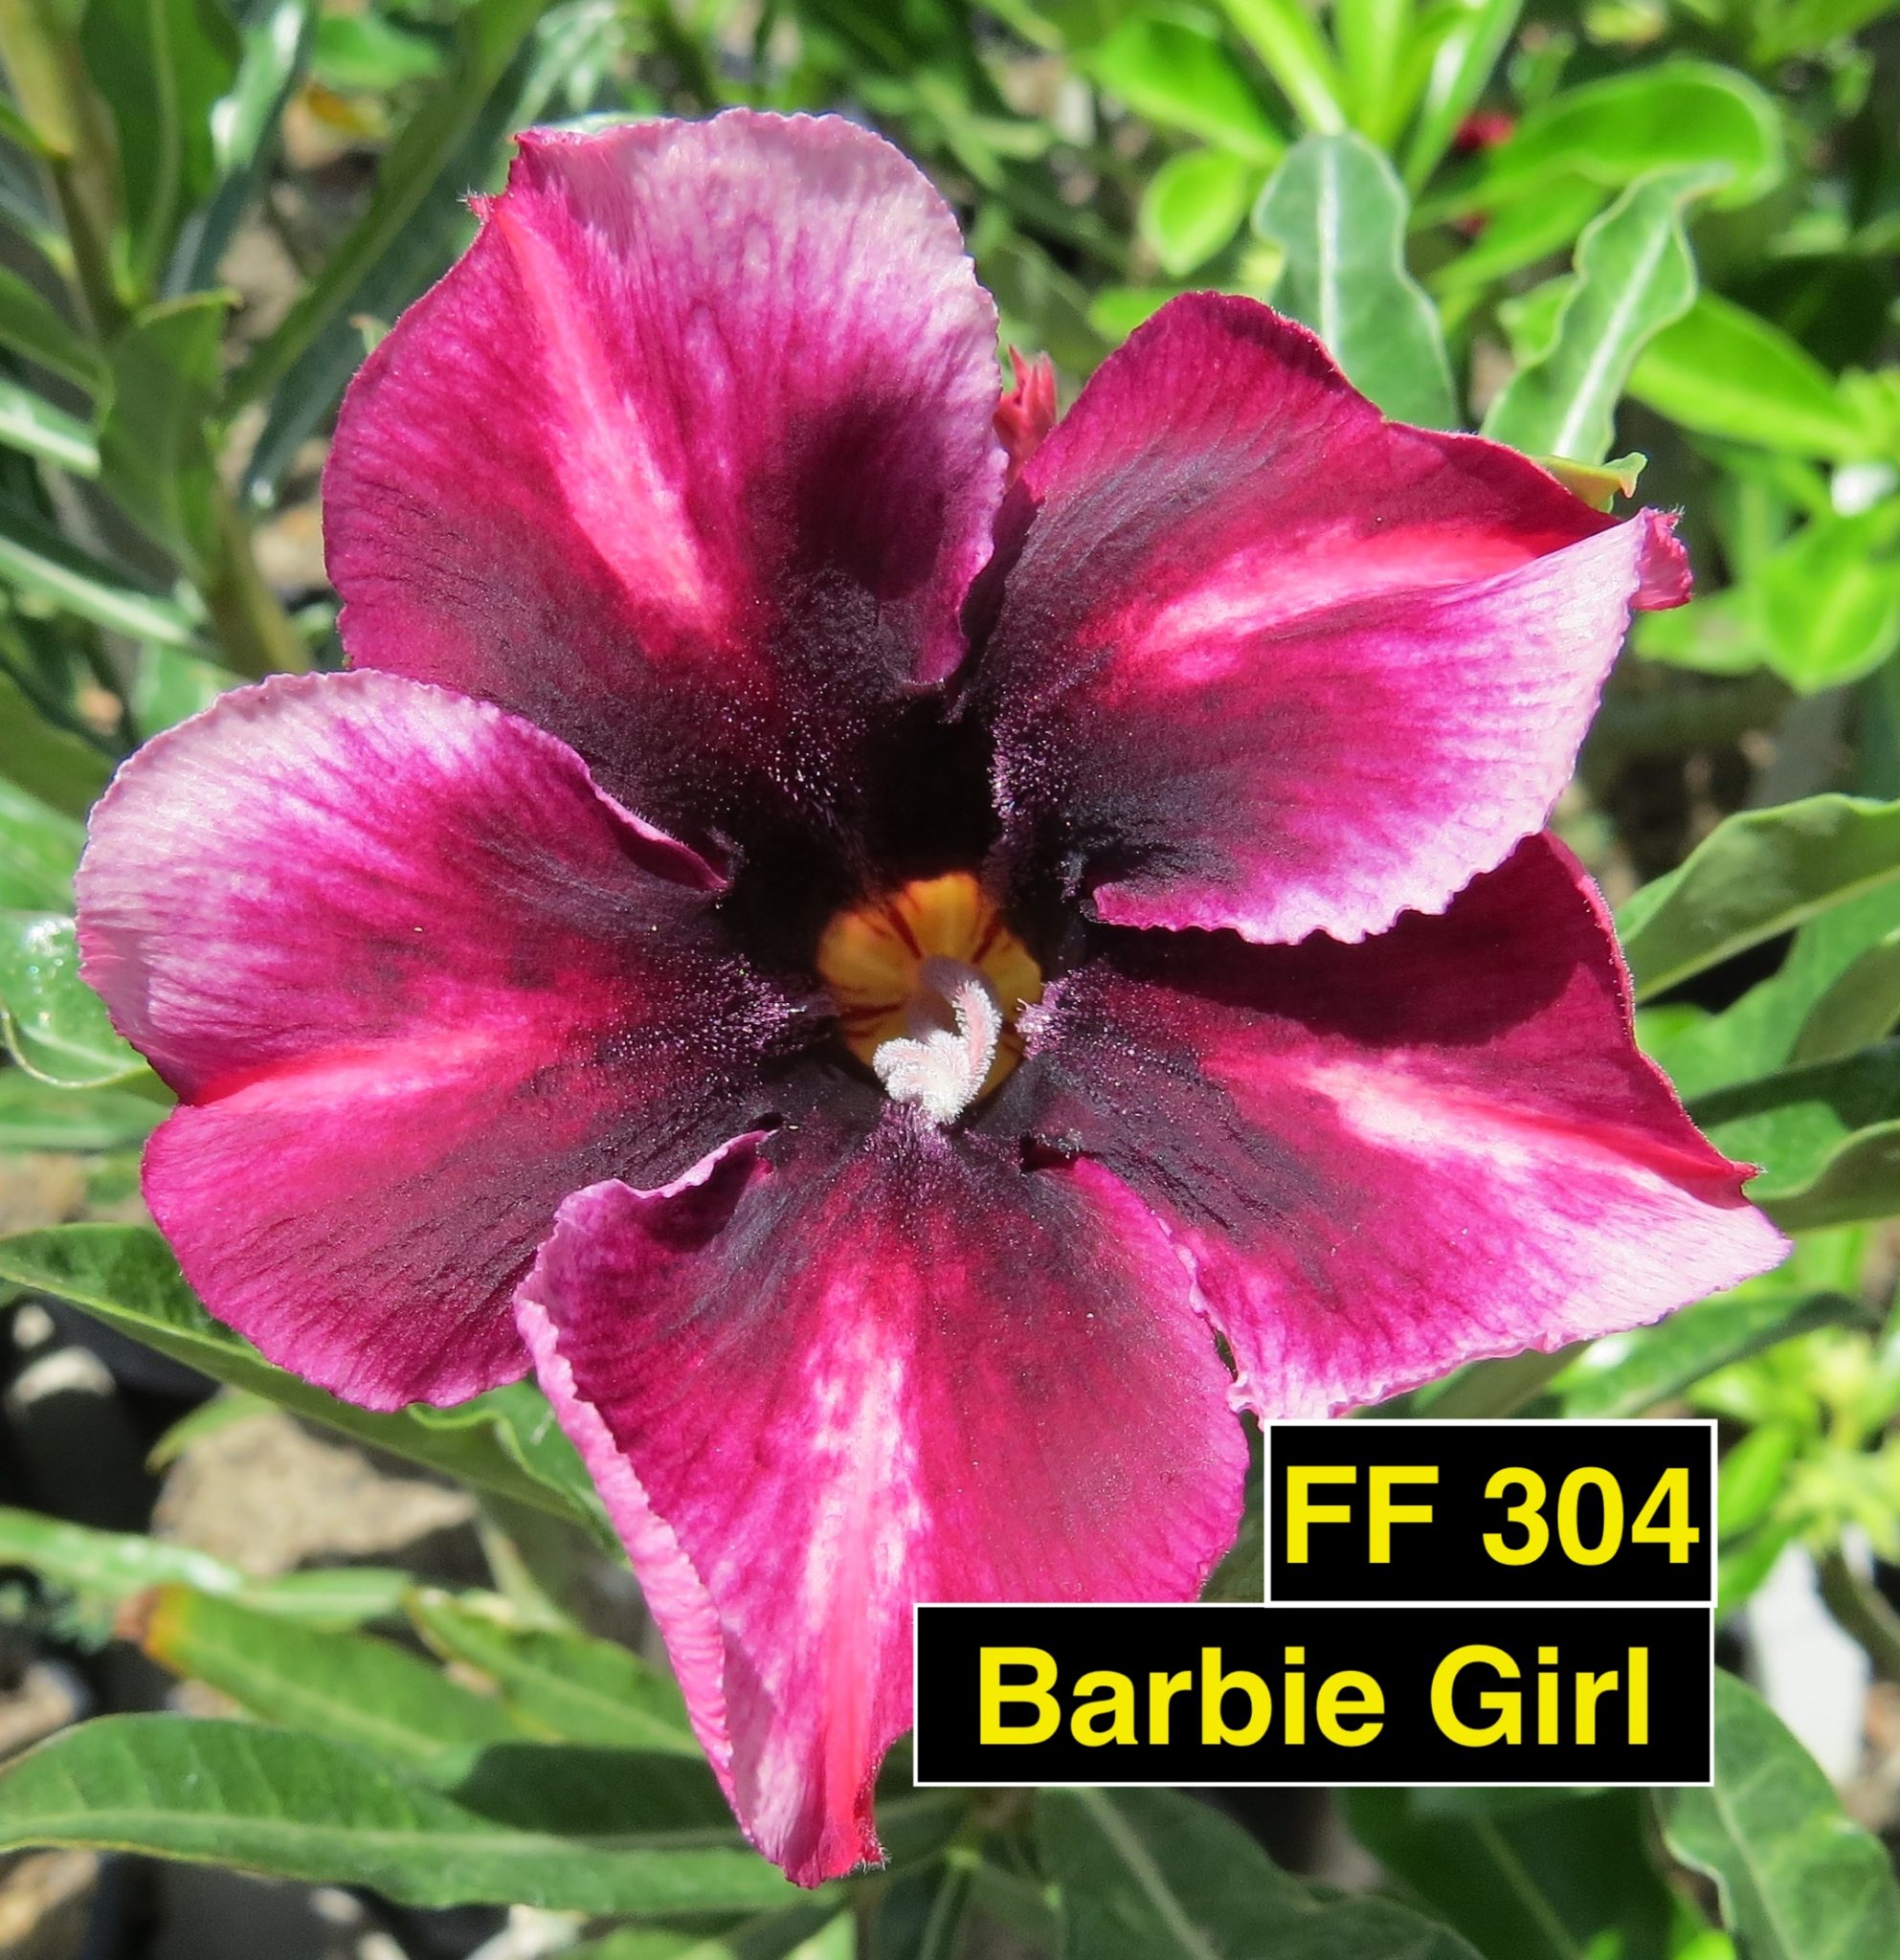 Barbie Girl FF 304 – Rosa do Deserto – Fuji